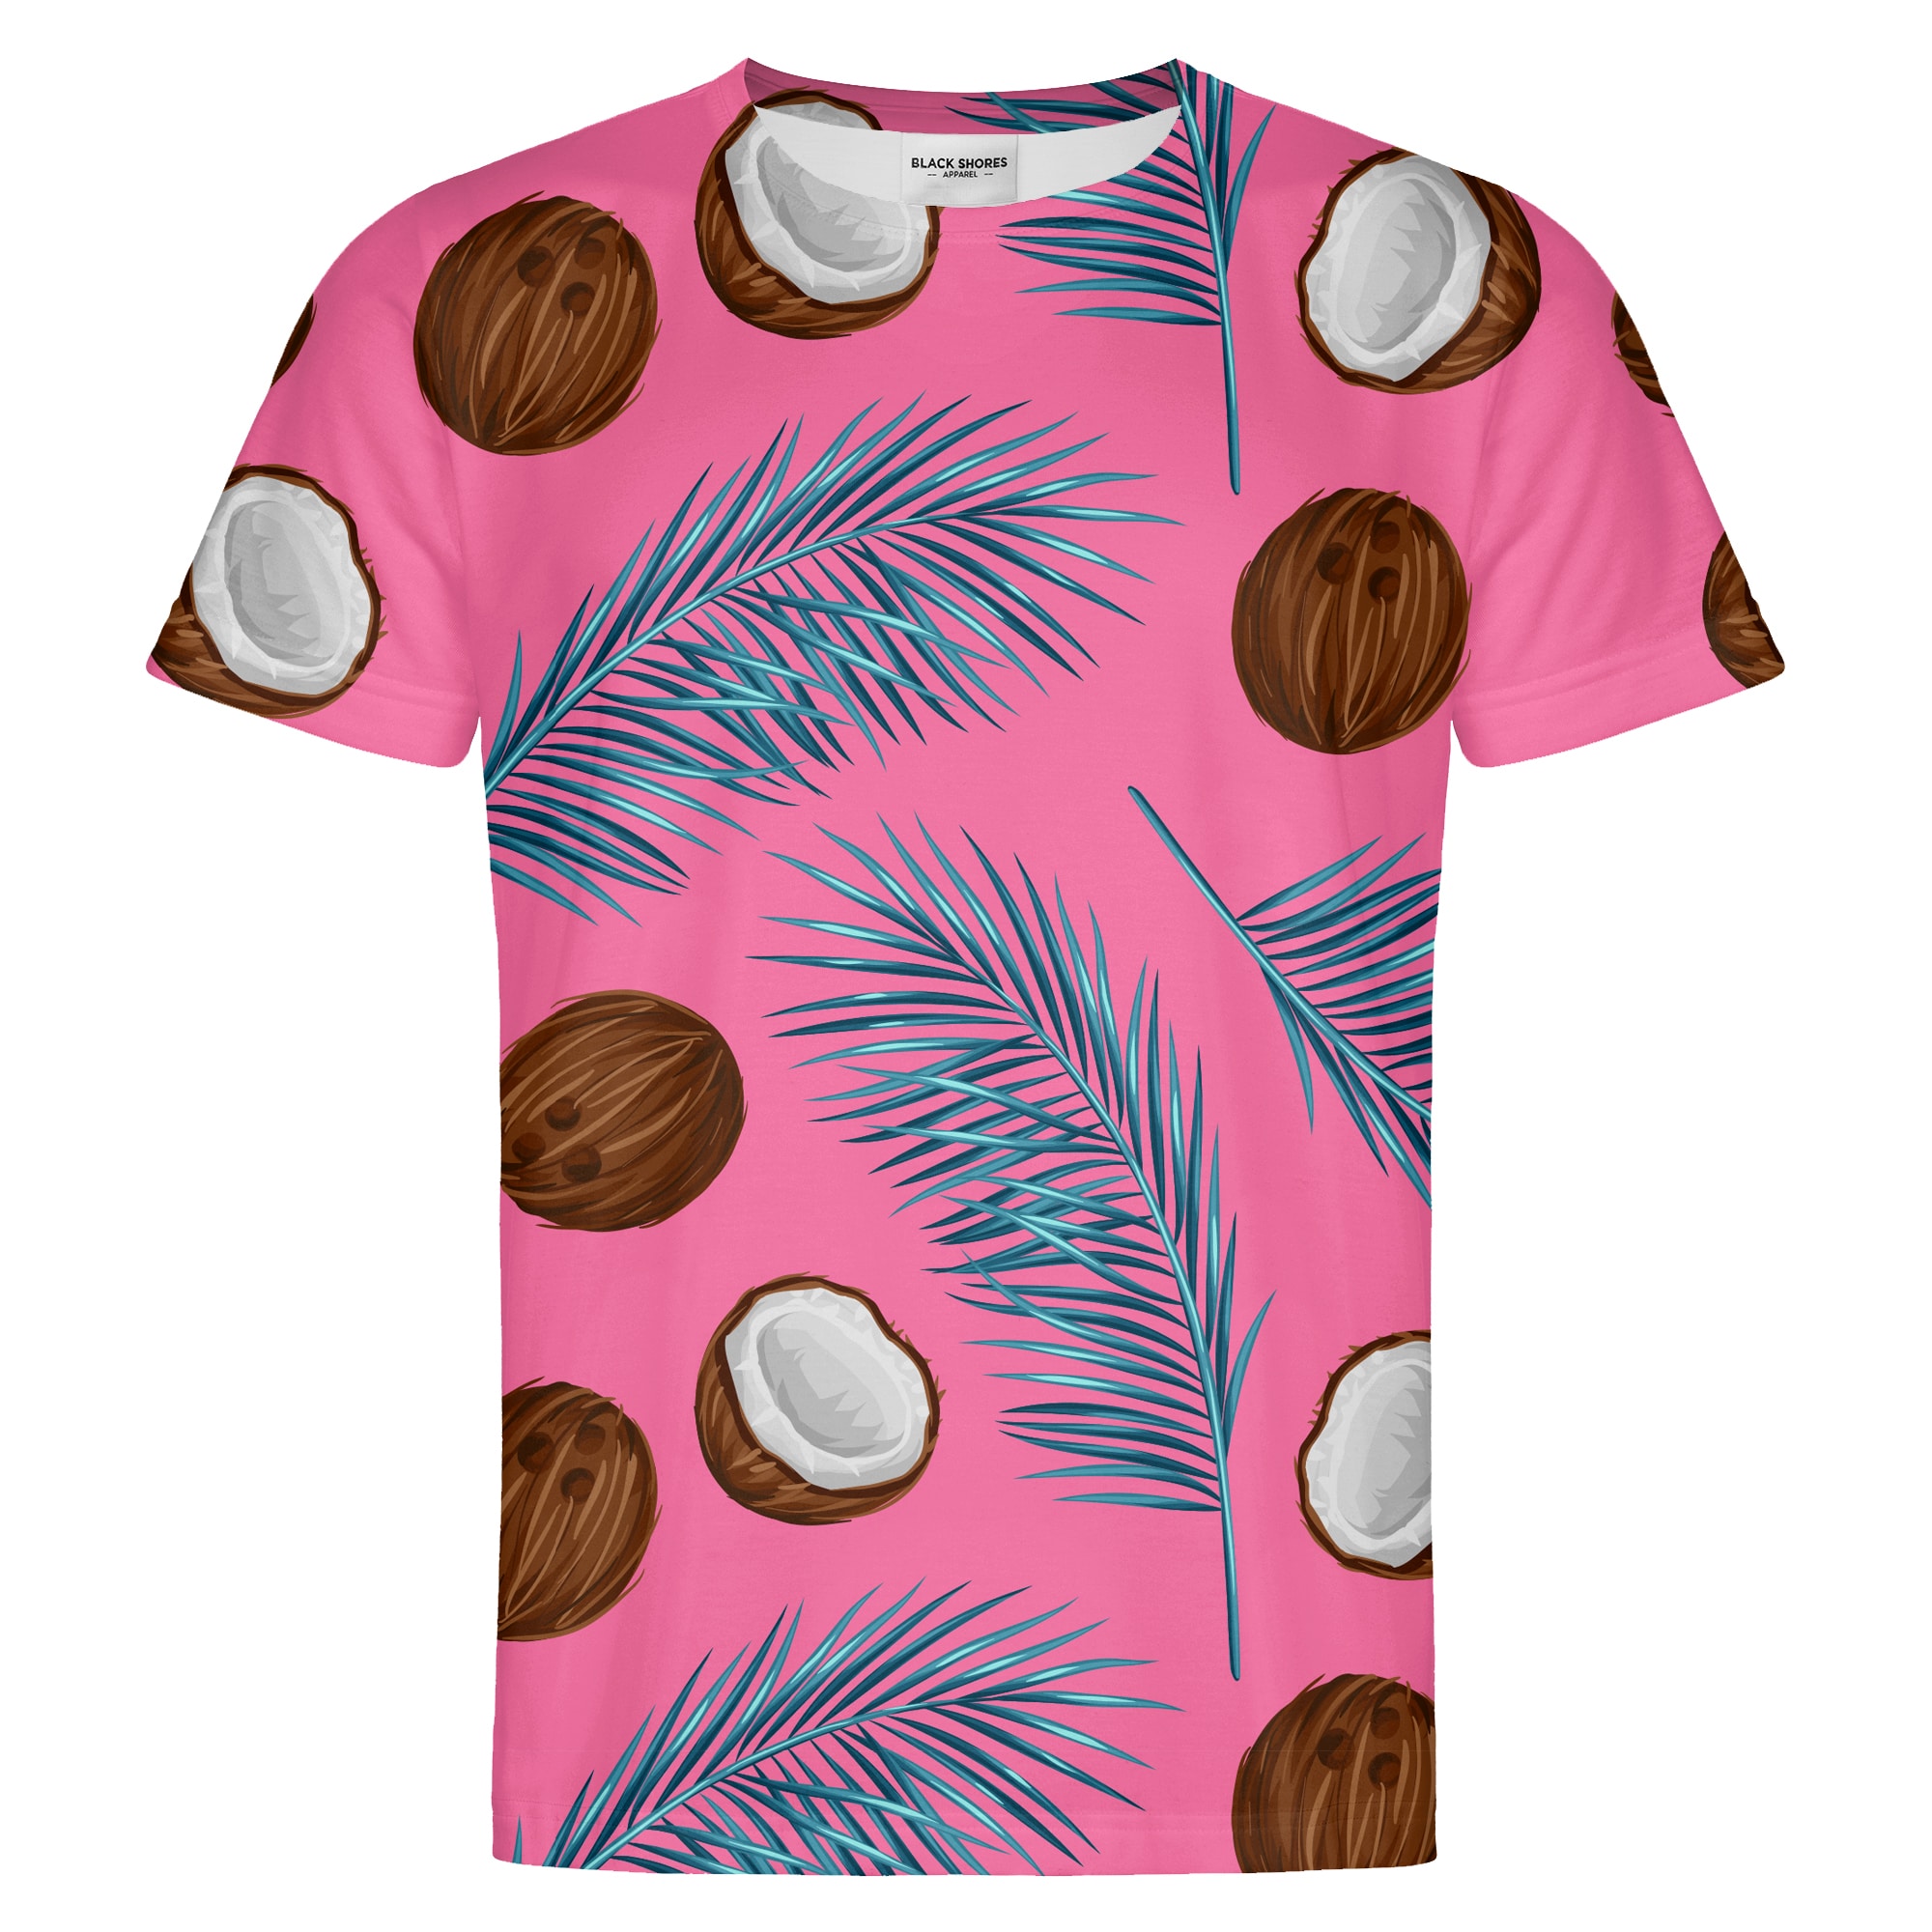 Coconuts T-shirt – Black Shores - XL